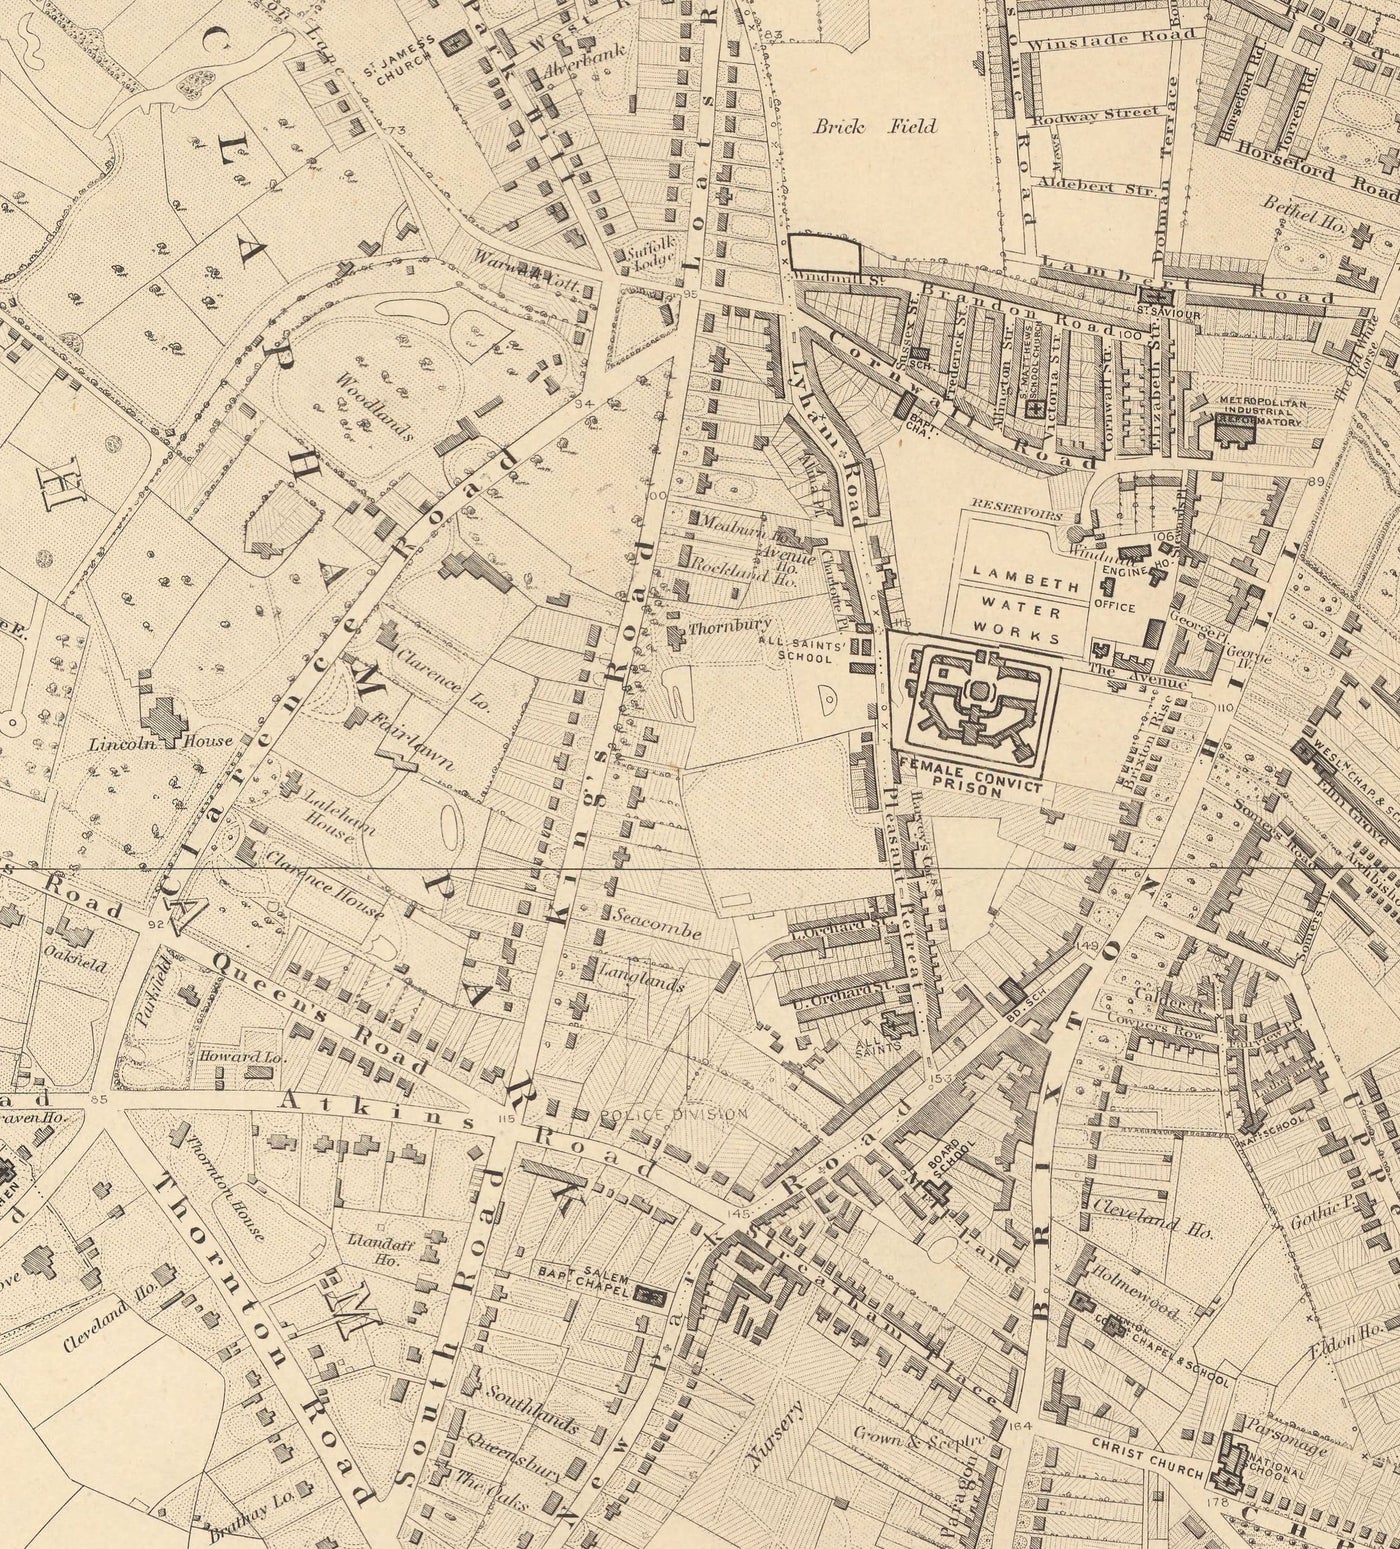 Ancienne carte de Sud Londres en 1862 par Edward Stanford - Clapham, Balham, Brixton, Toting - SW2, SW4, SW12, SW17, SW11